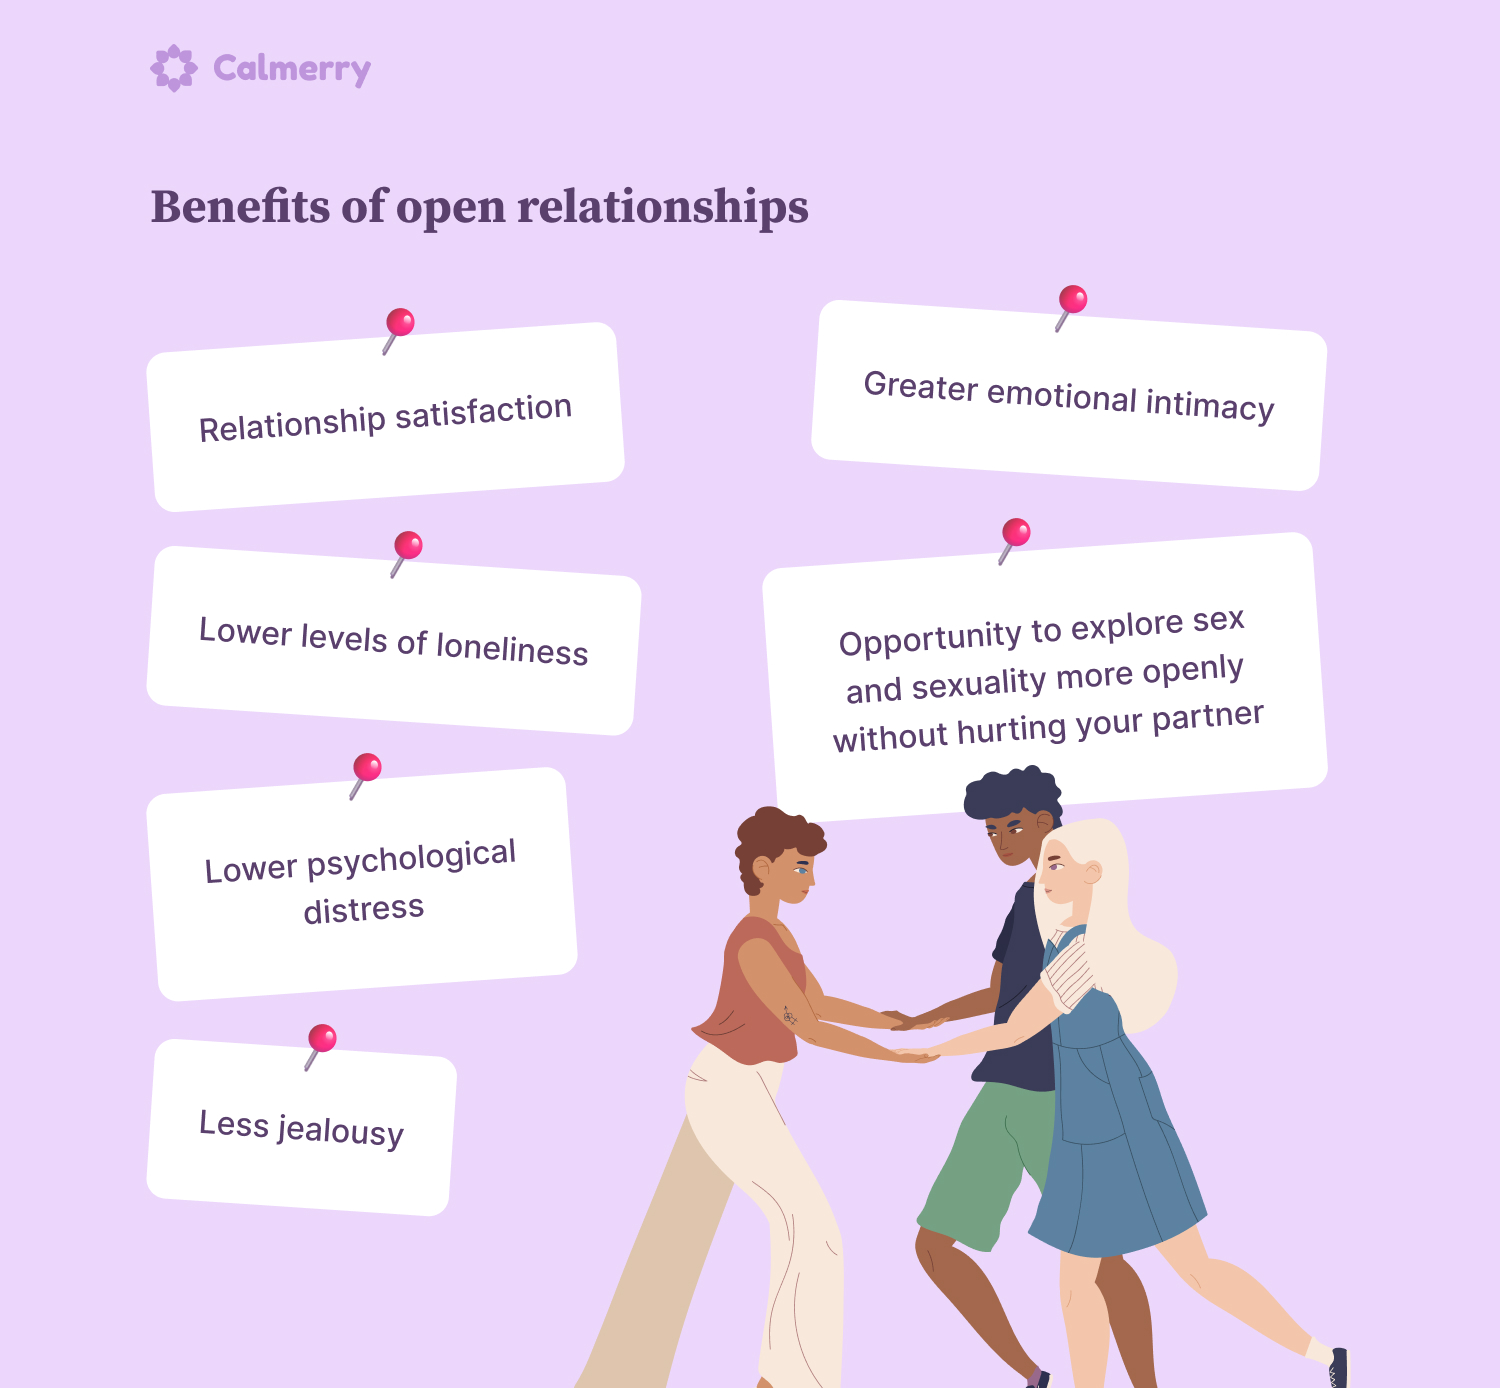 Benefits of open relationships